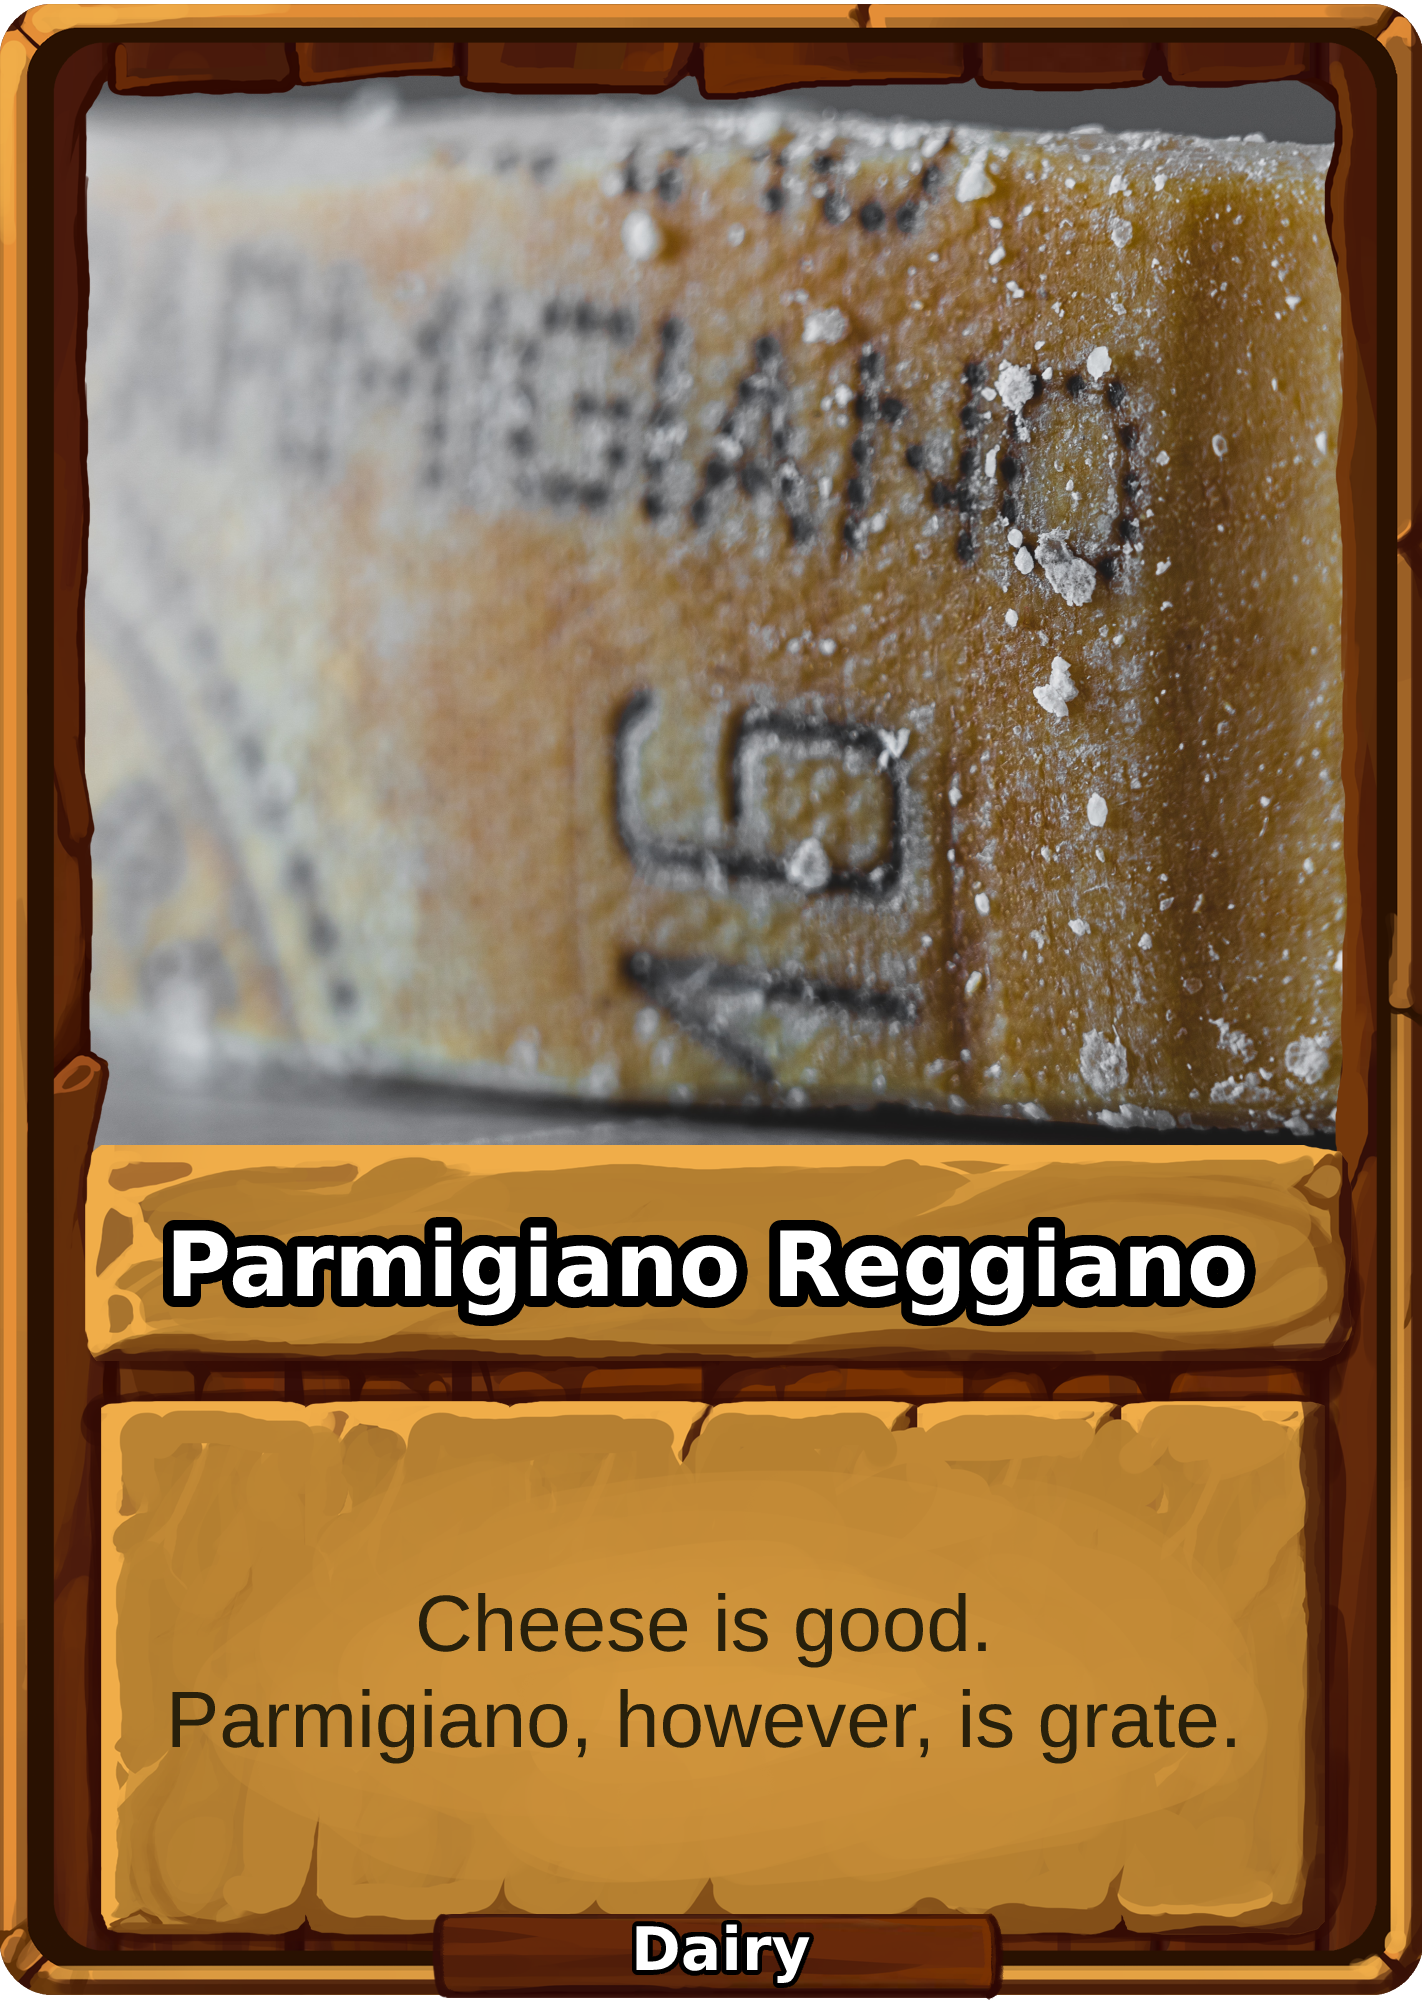 Parmigiano Reggiano Card Image